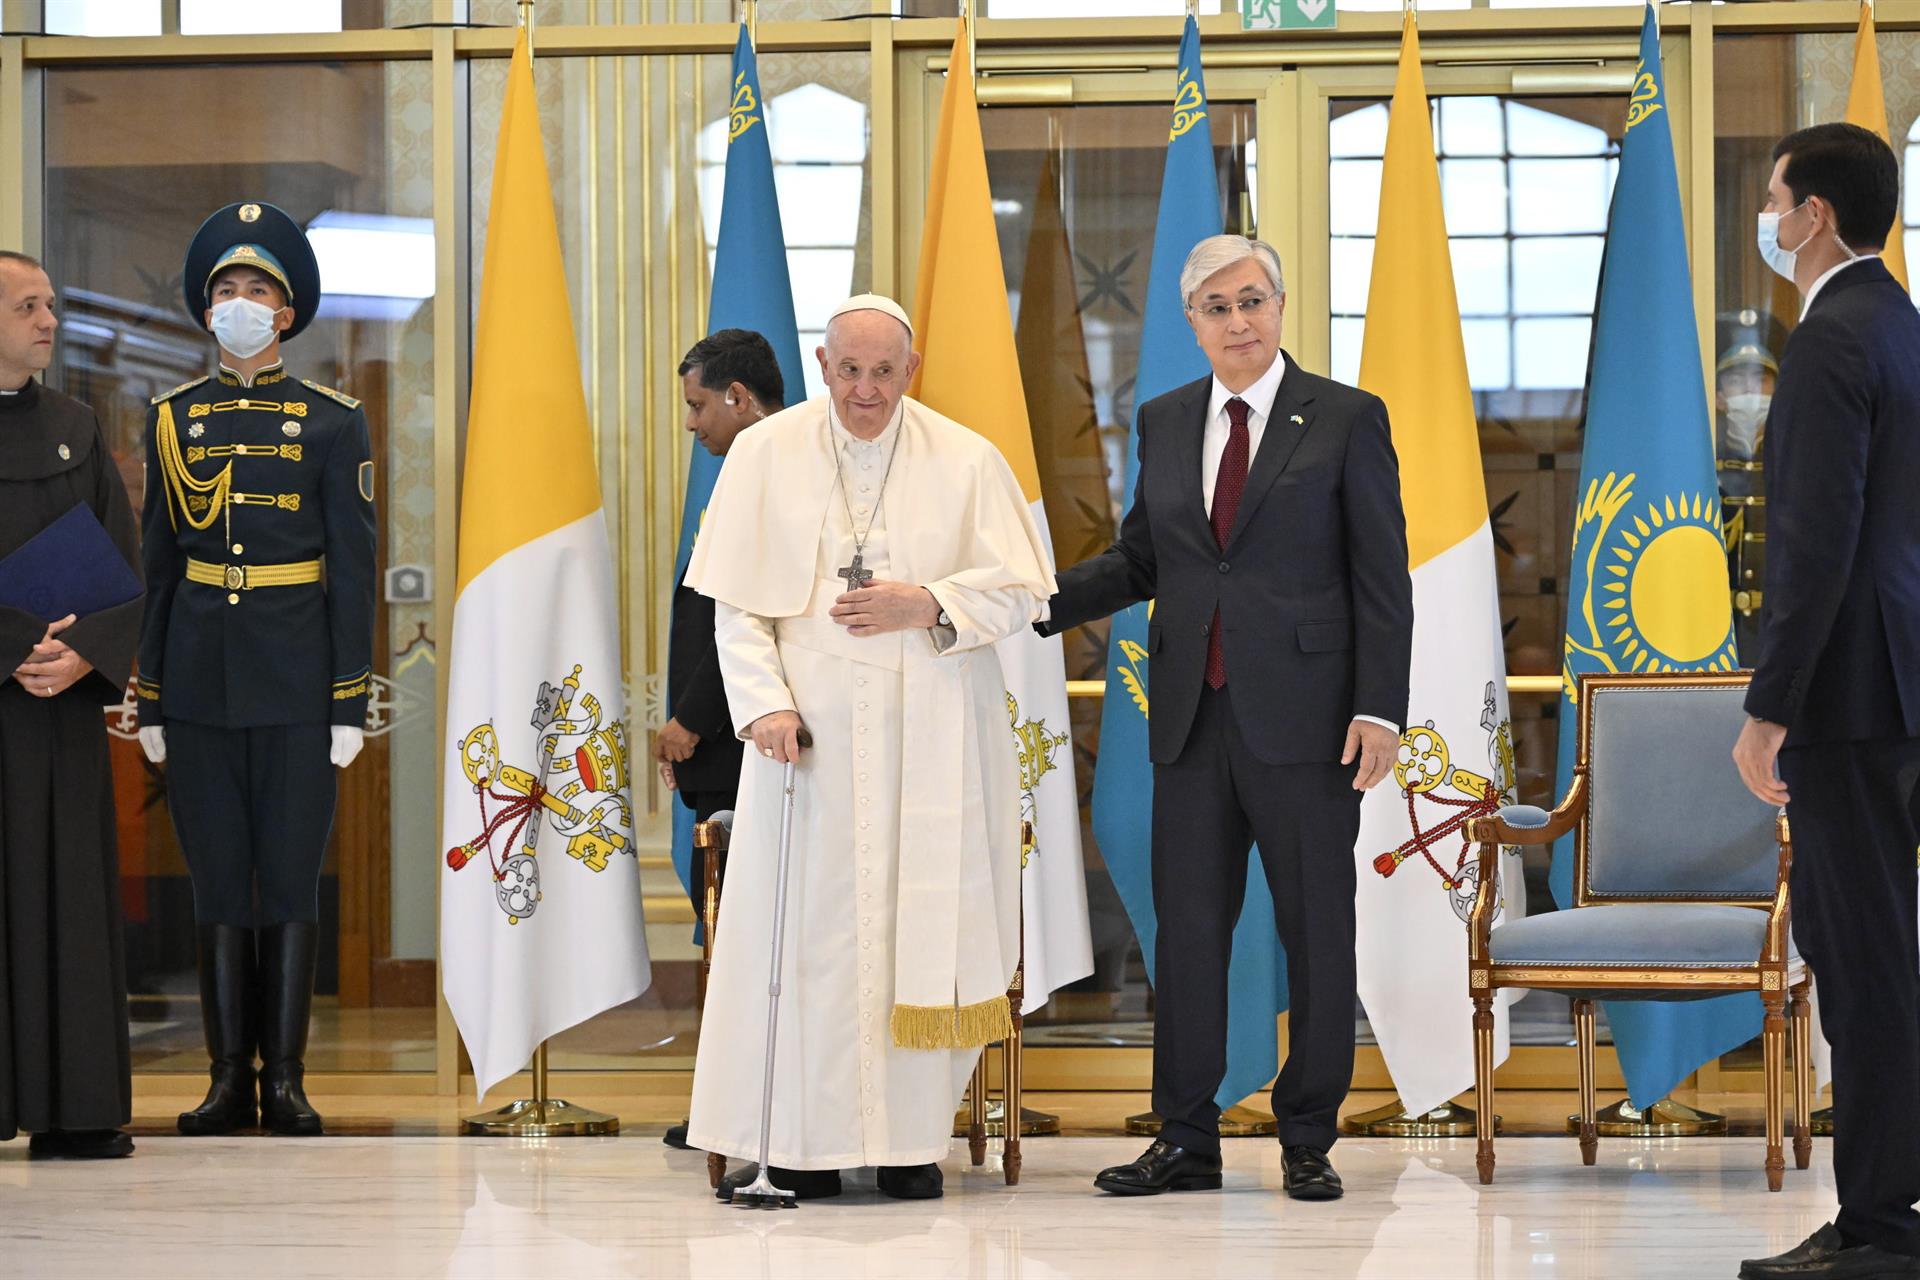 papal visit to kazakhstan